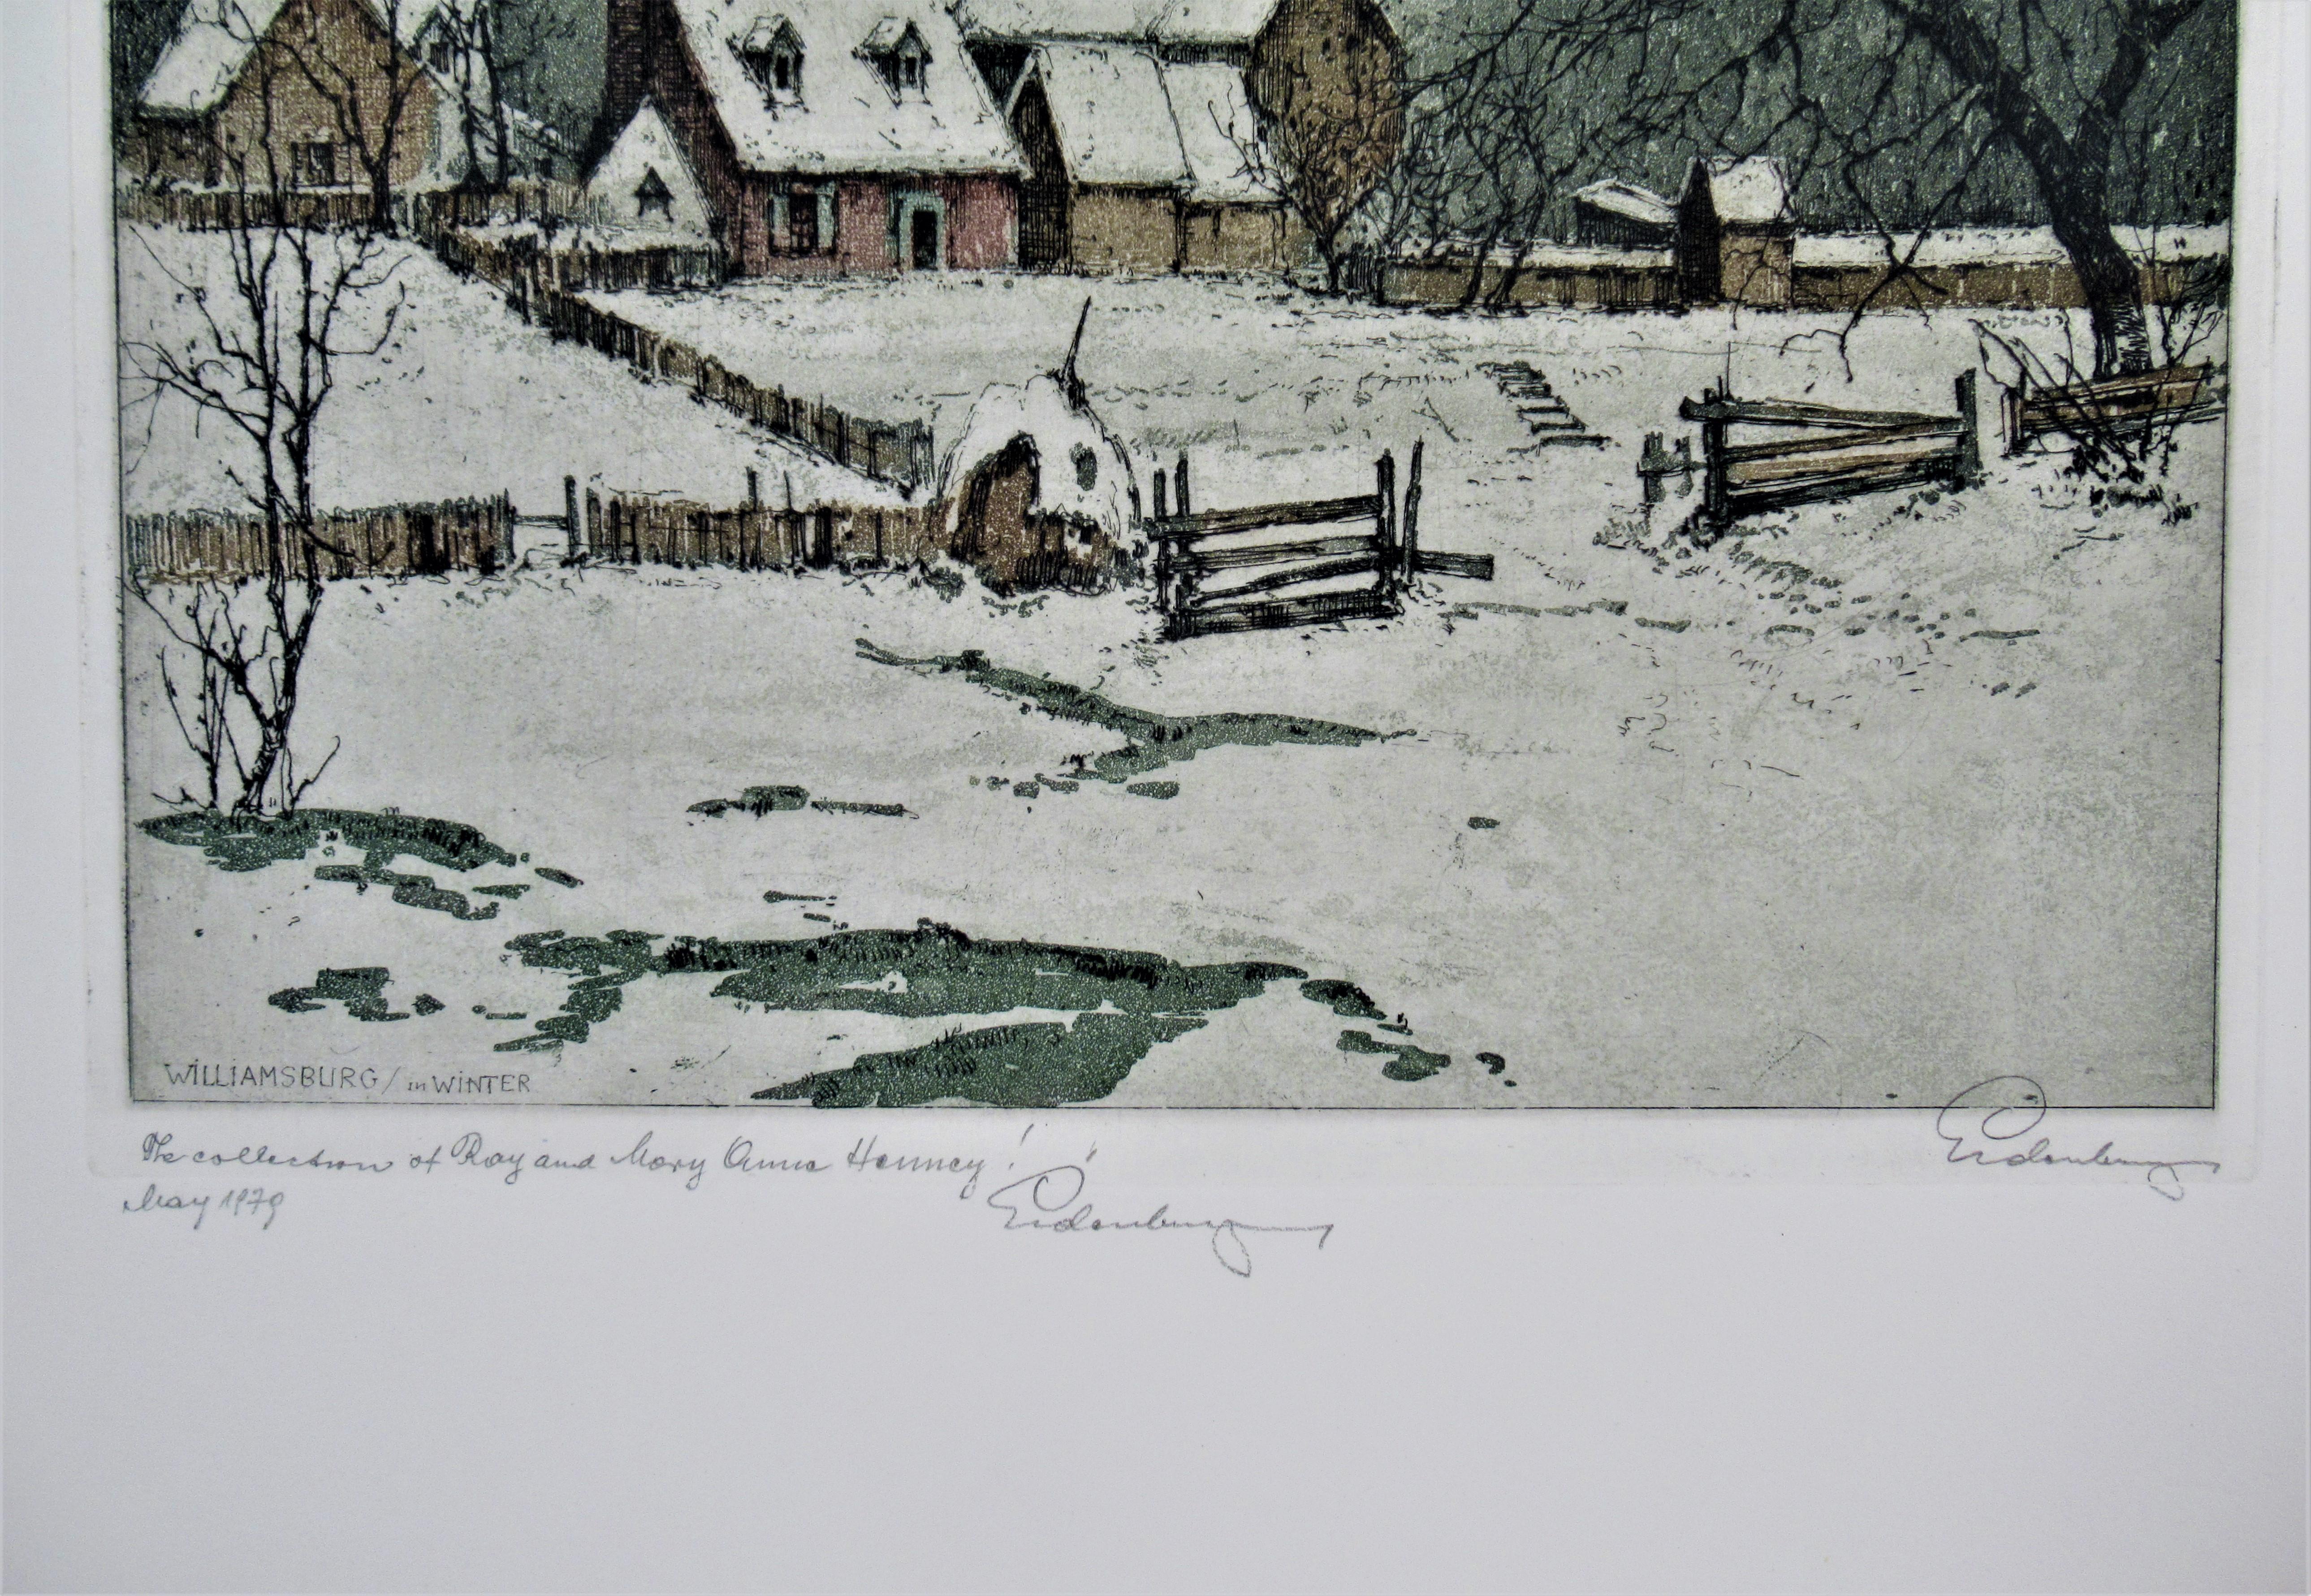 Williamsburg in Winter - Realist Print by Josef Eidenberger